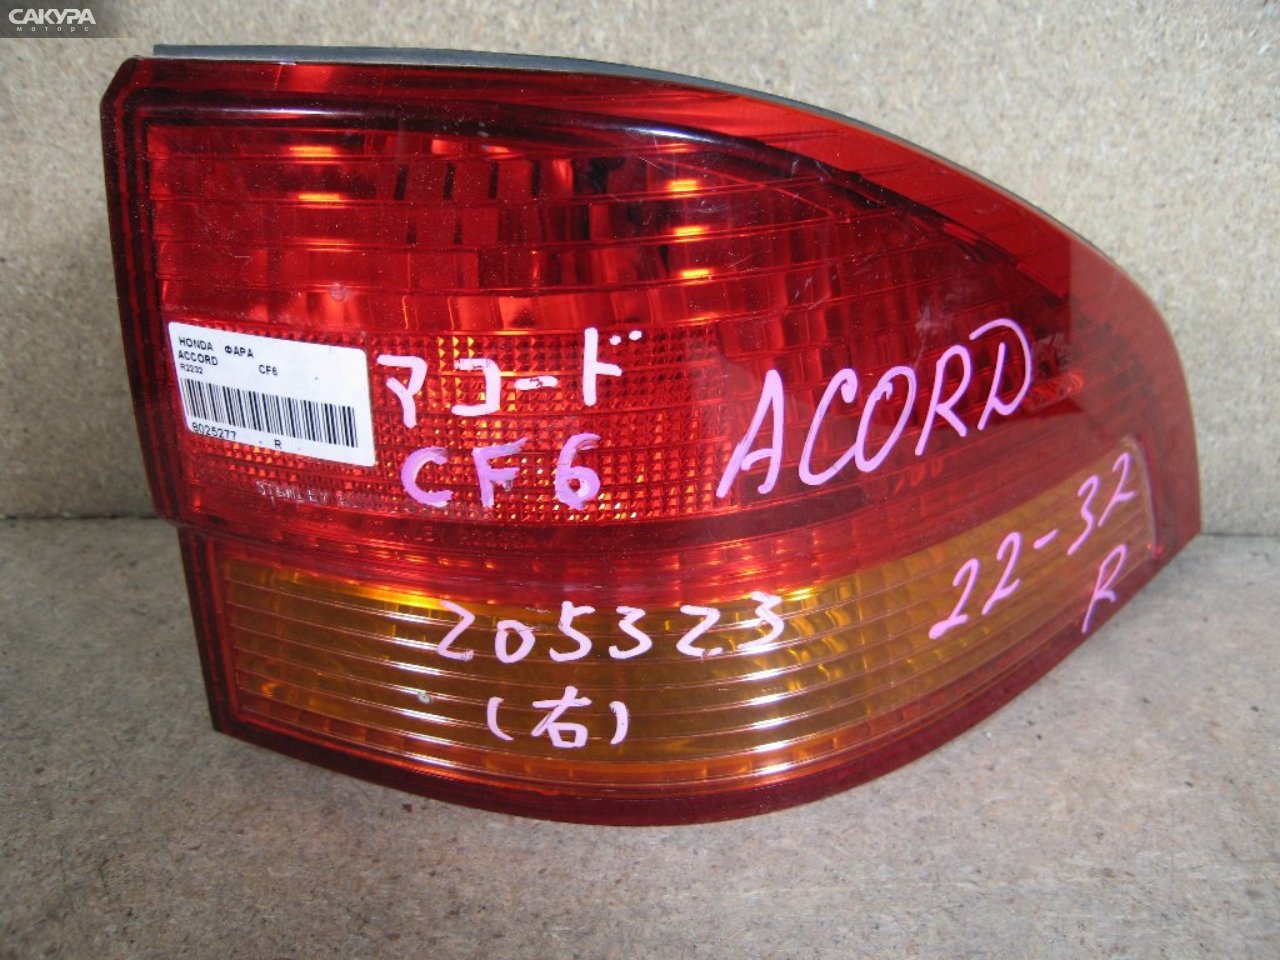 Фонарь стоп-сигнала правый Honda Accord Wagon CF6 R2232: купить в Сакура Абакан.